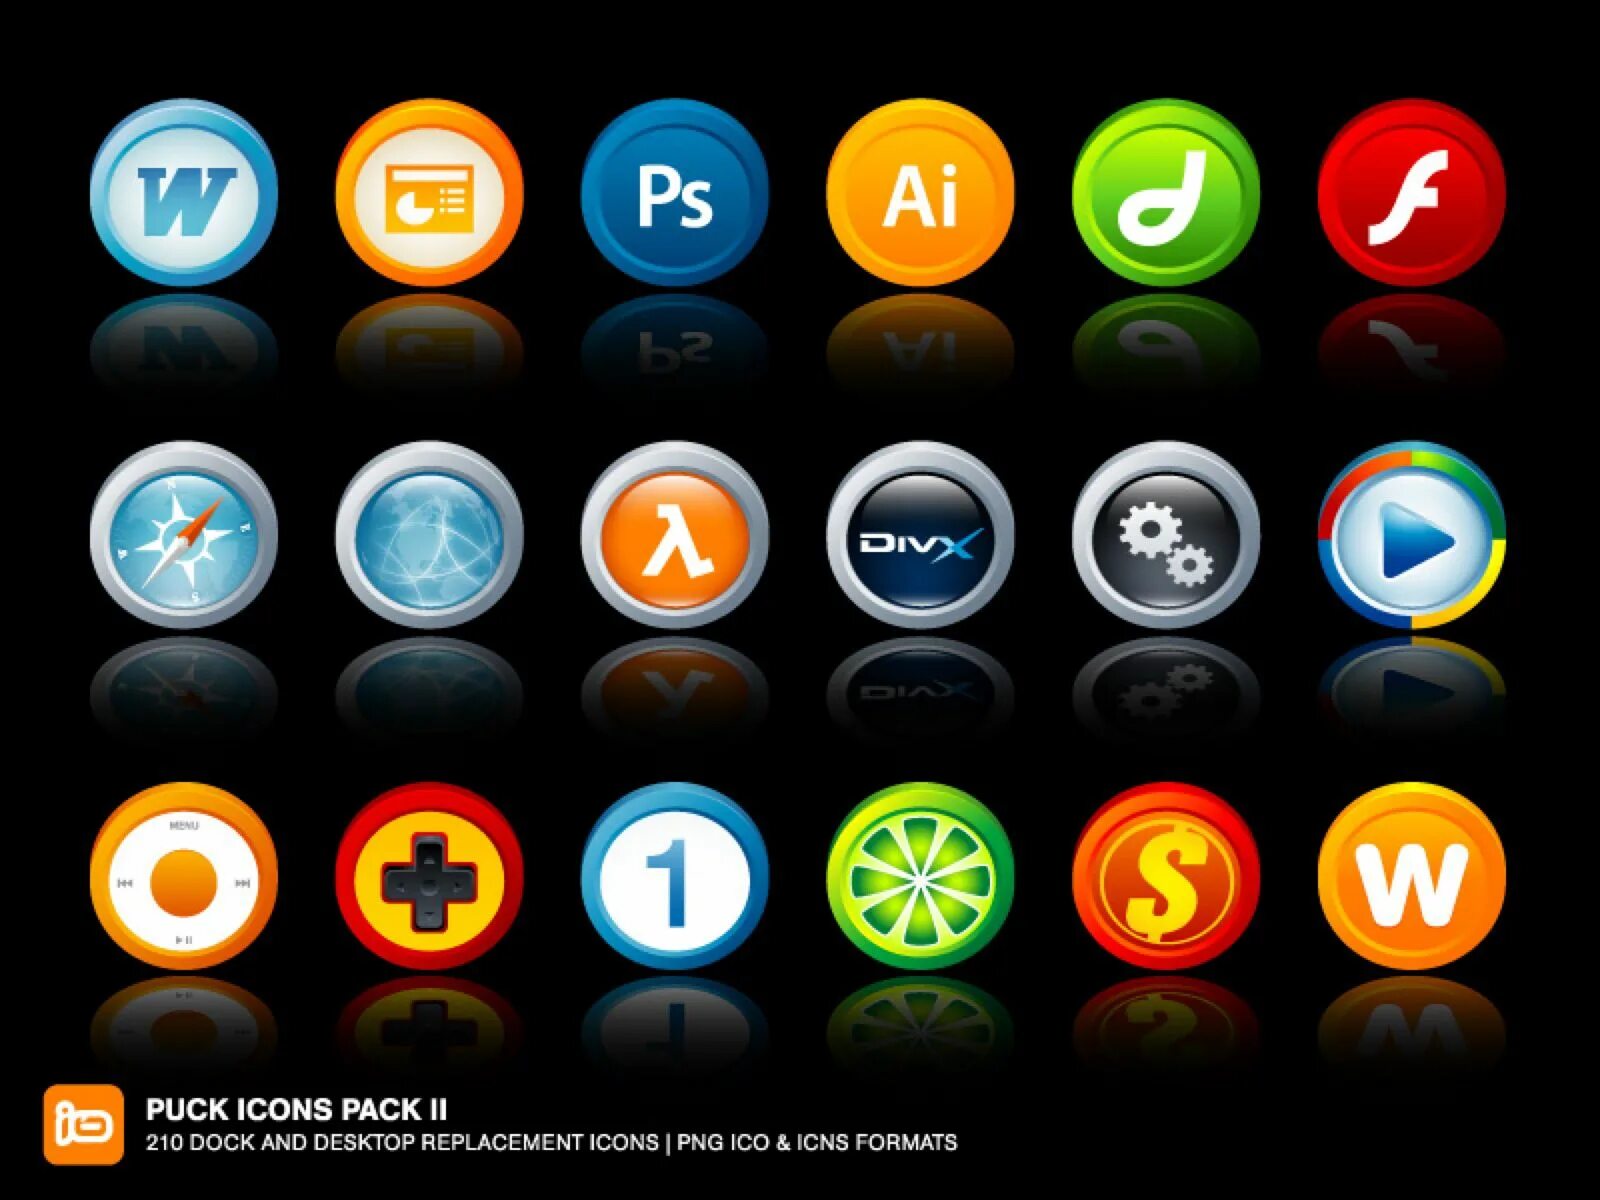 Icon pack 4pda. Pack иконка. Иконки в едином стиле. Современные значки. Пак иконок для фотошопа.